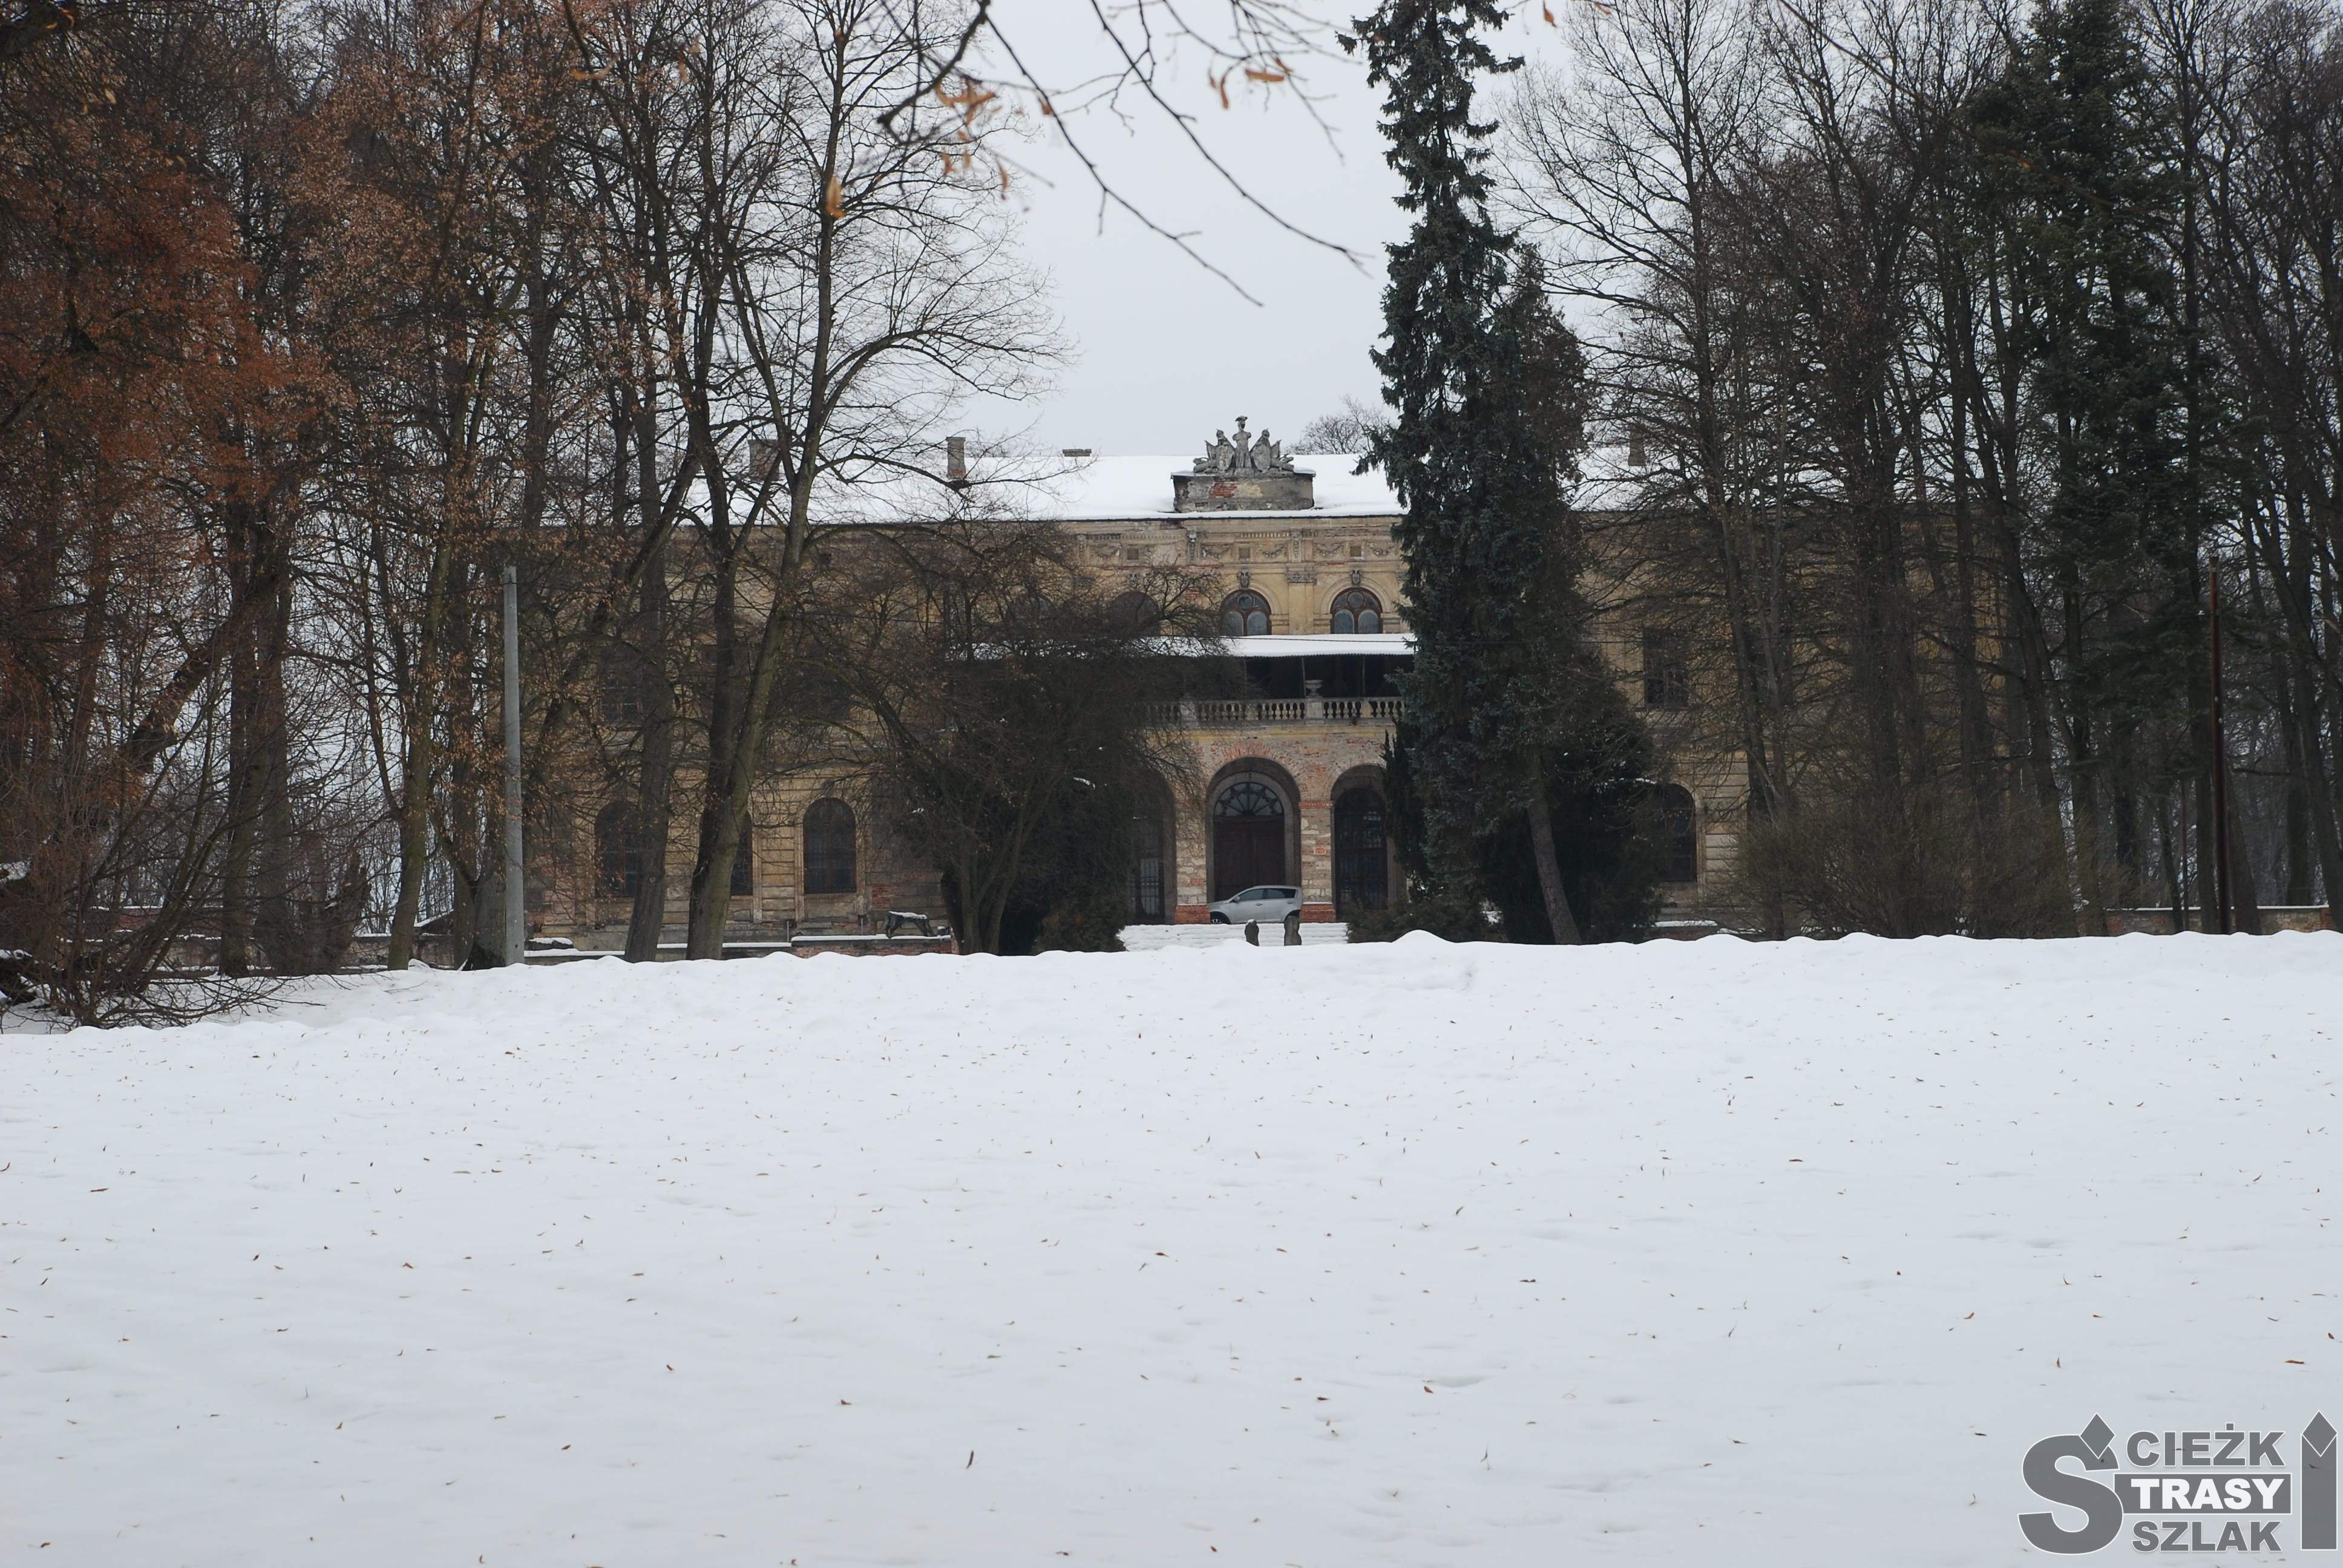 Pałac w Pilicy z wejściem z łukowatym kolumn otoczony drzewami w parku pokrytym śniegiem